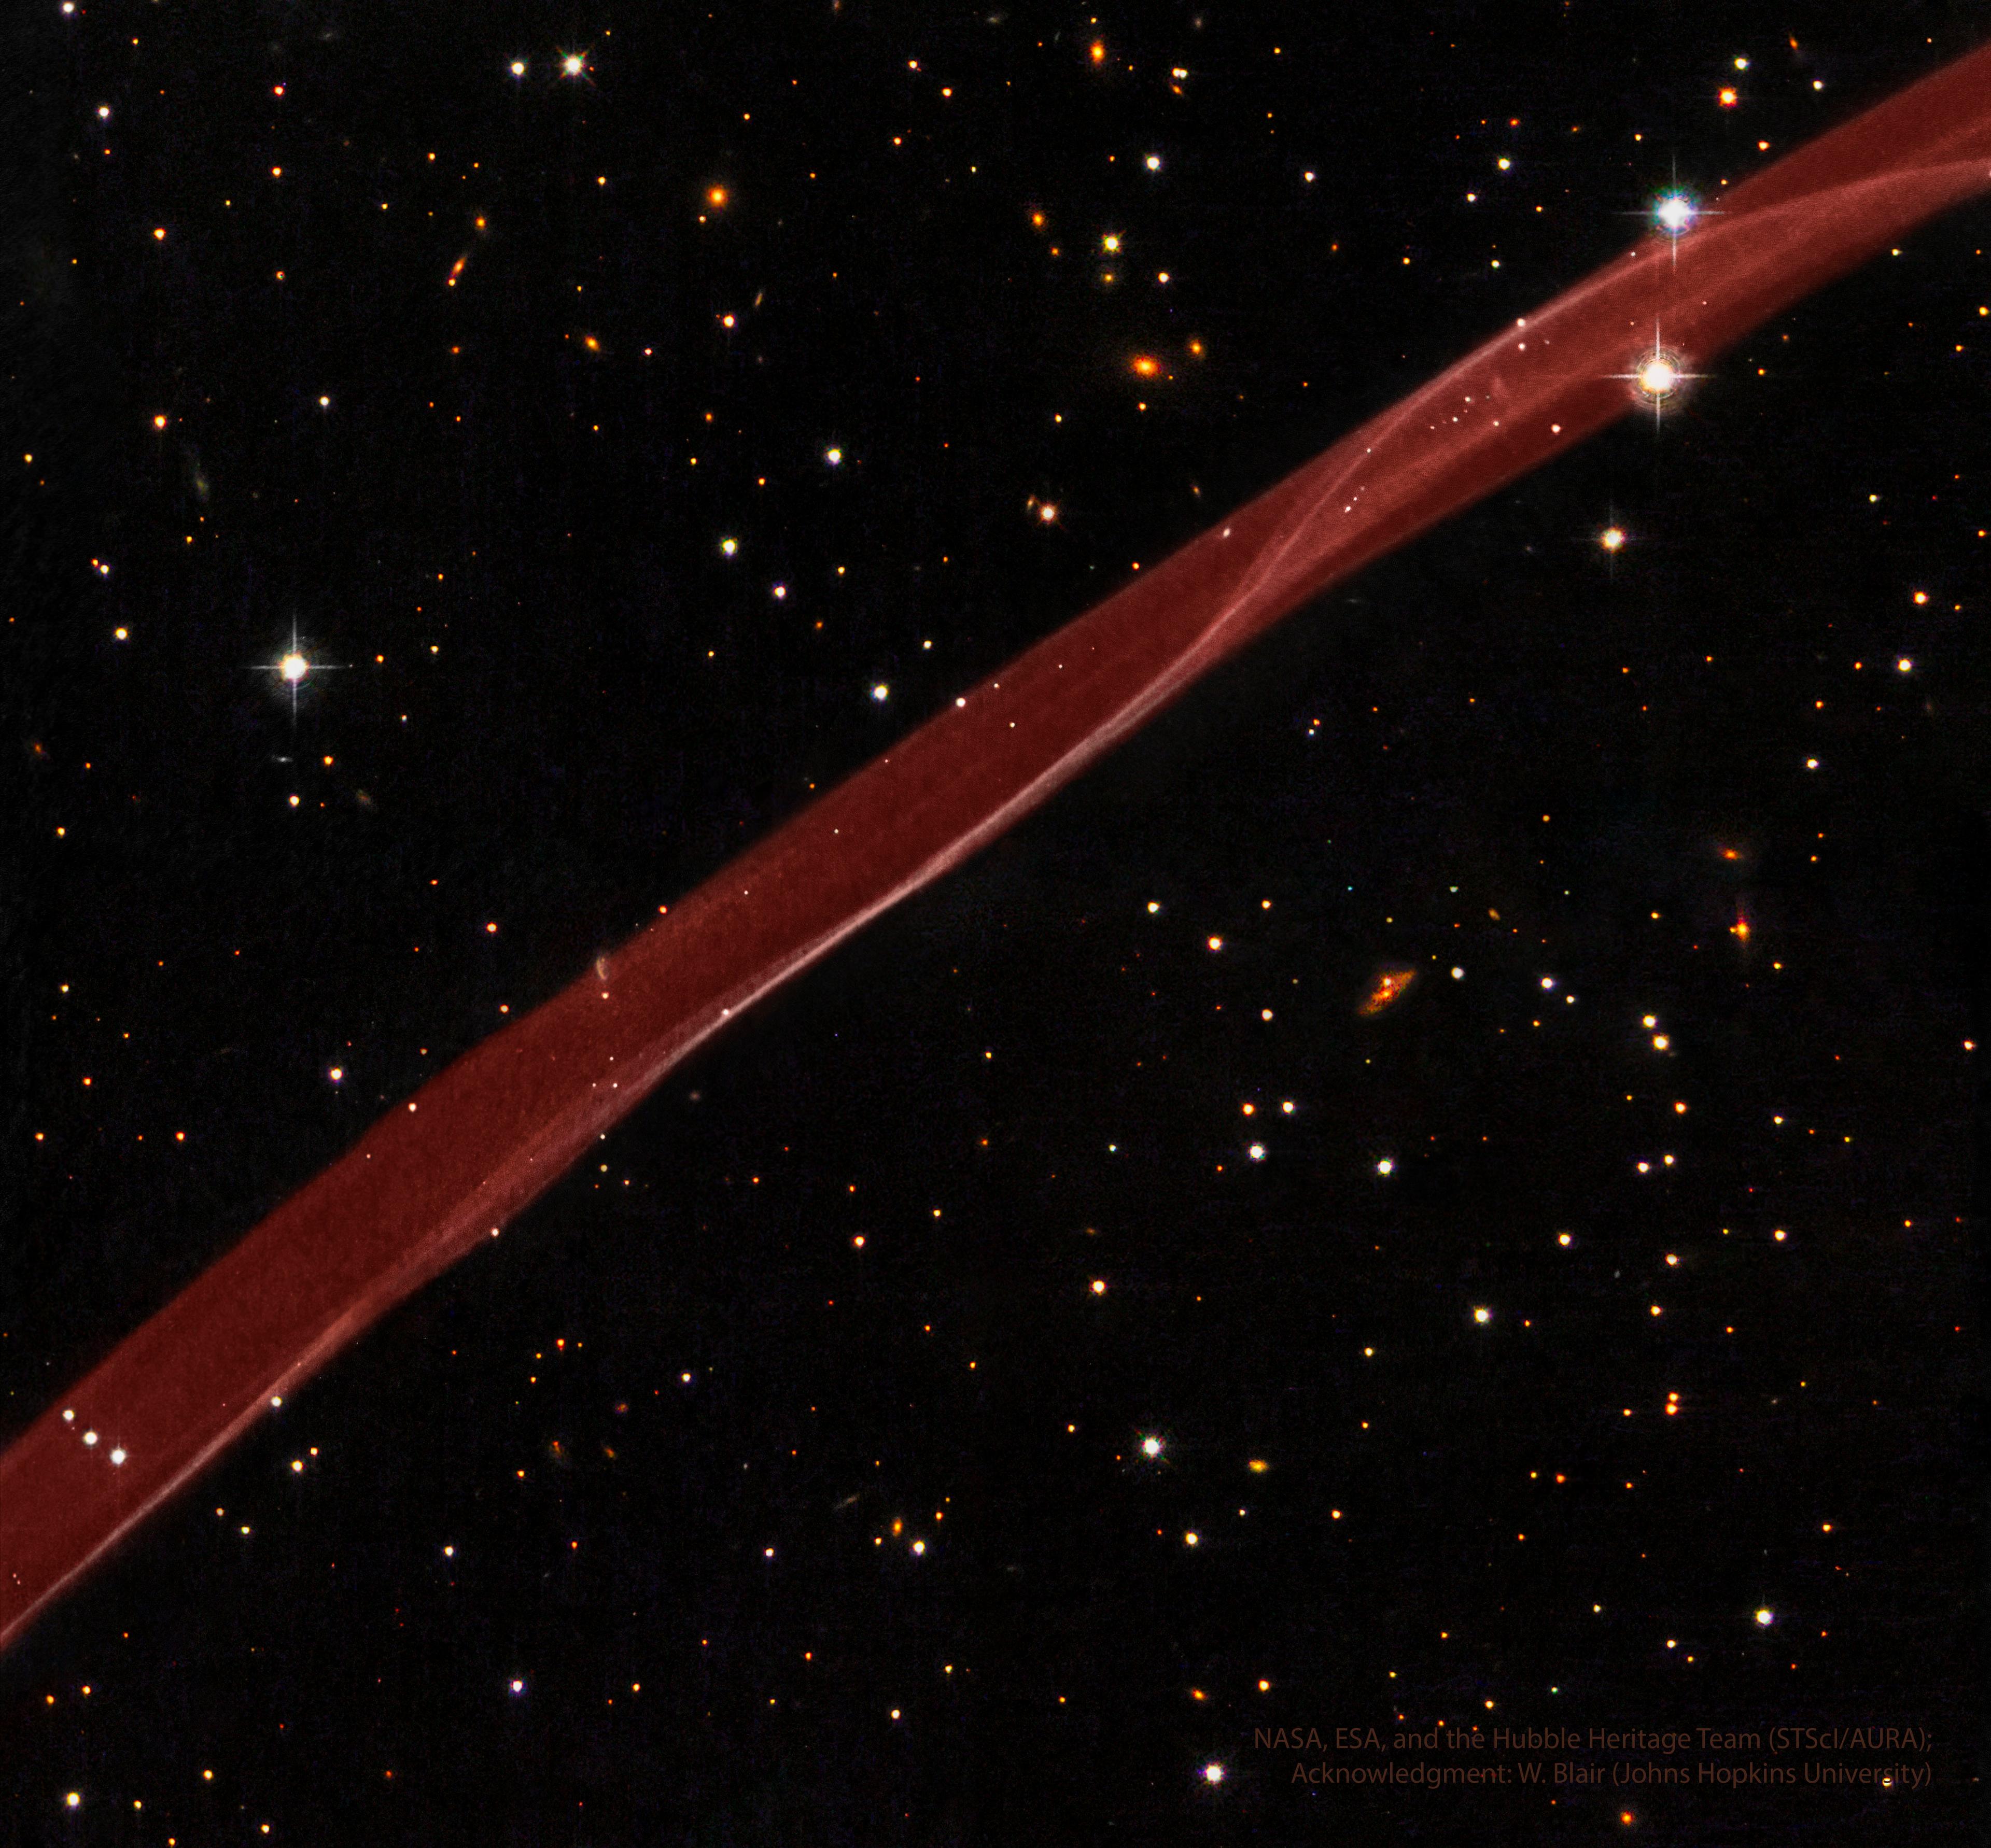 شريطةٌ سميكة شفّافة من الغاز الأحمر تجري من أسفل اليسار لأعلى اليمين. حقل نجومٍ مُظلم فيه نجومٌ ومجرّات يحيط بالشريطة الحمراء الساطعة.